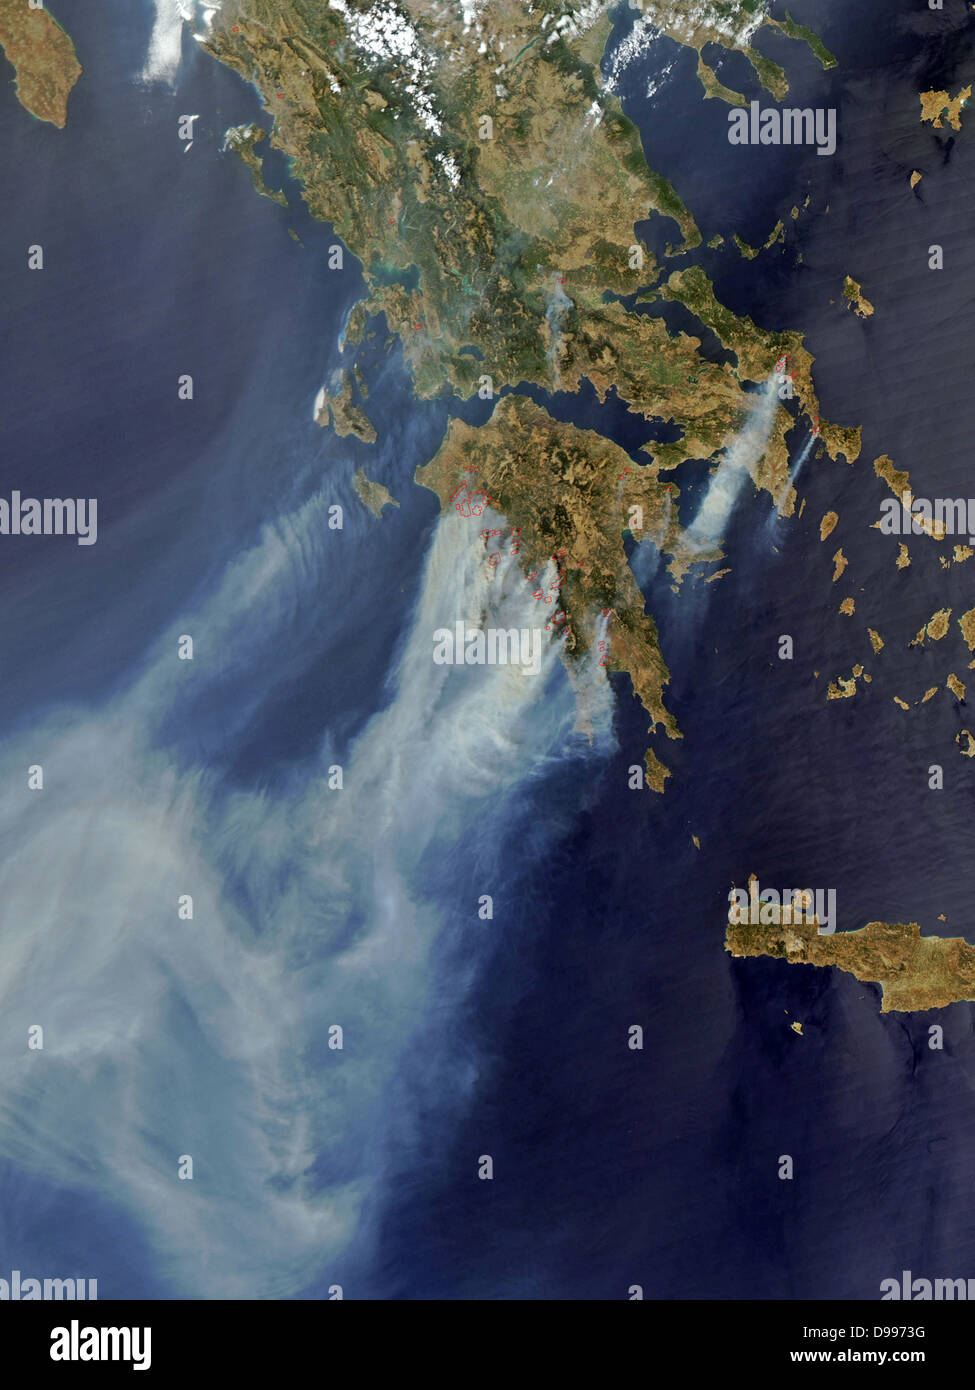 Gli incendi sulla Grecia nell'estate del 2008. Immagine satellitare. Foto Stock